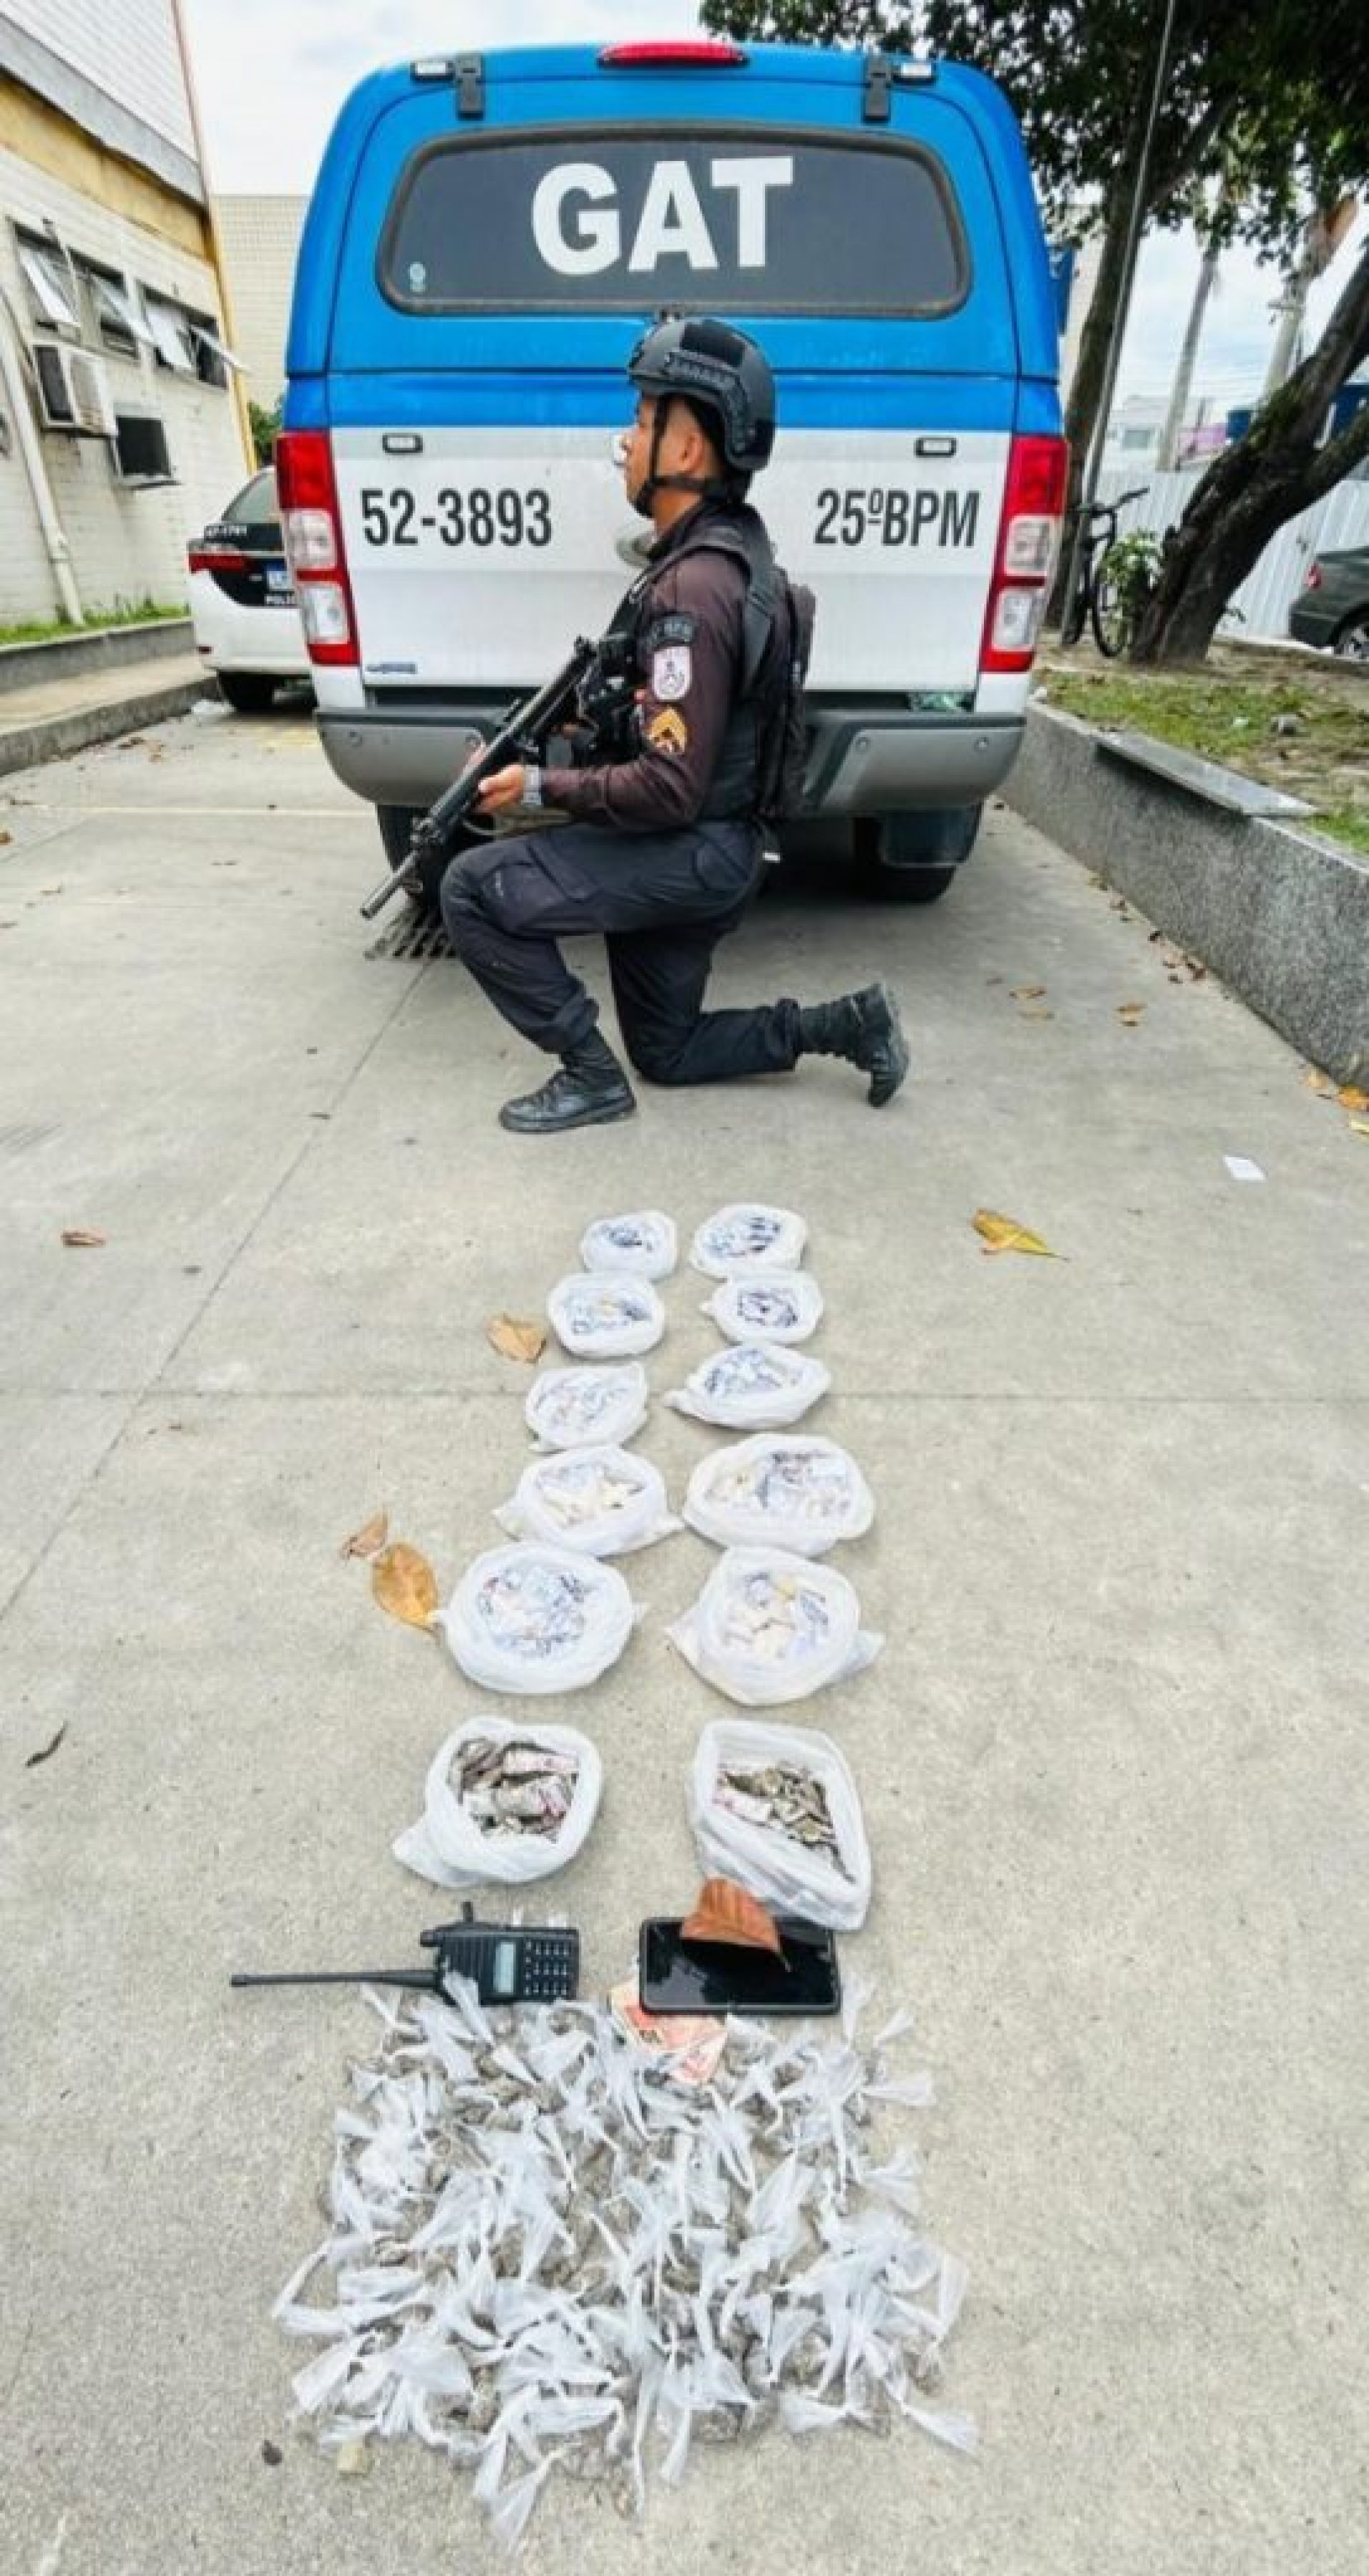 Polícia apreende um rádio transmissor, um celular e R$ 25, em espécie  - Divulgação/ PM